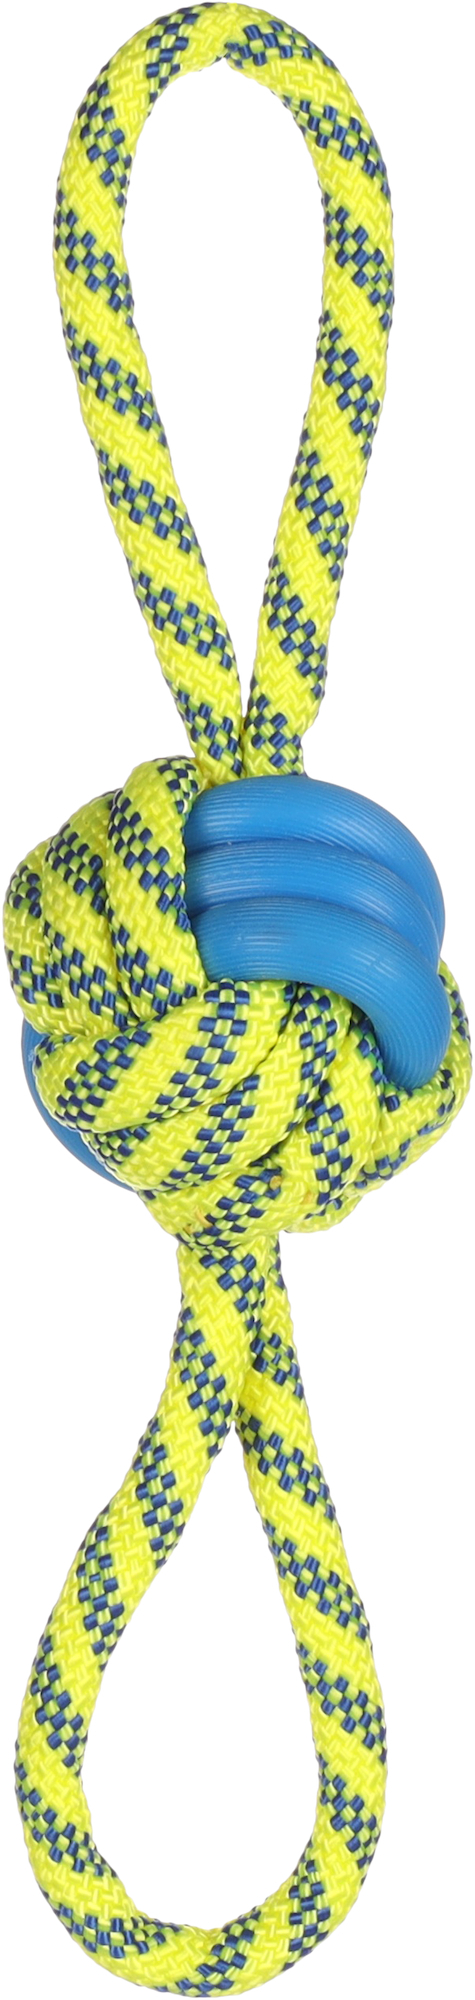 Tofla Hundespielzeug blau/gelb geknoteter Ball aus Gummi und widerstandsfähigem Nylon